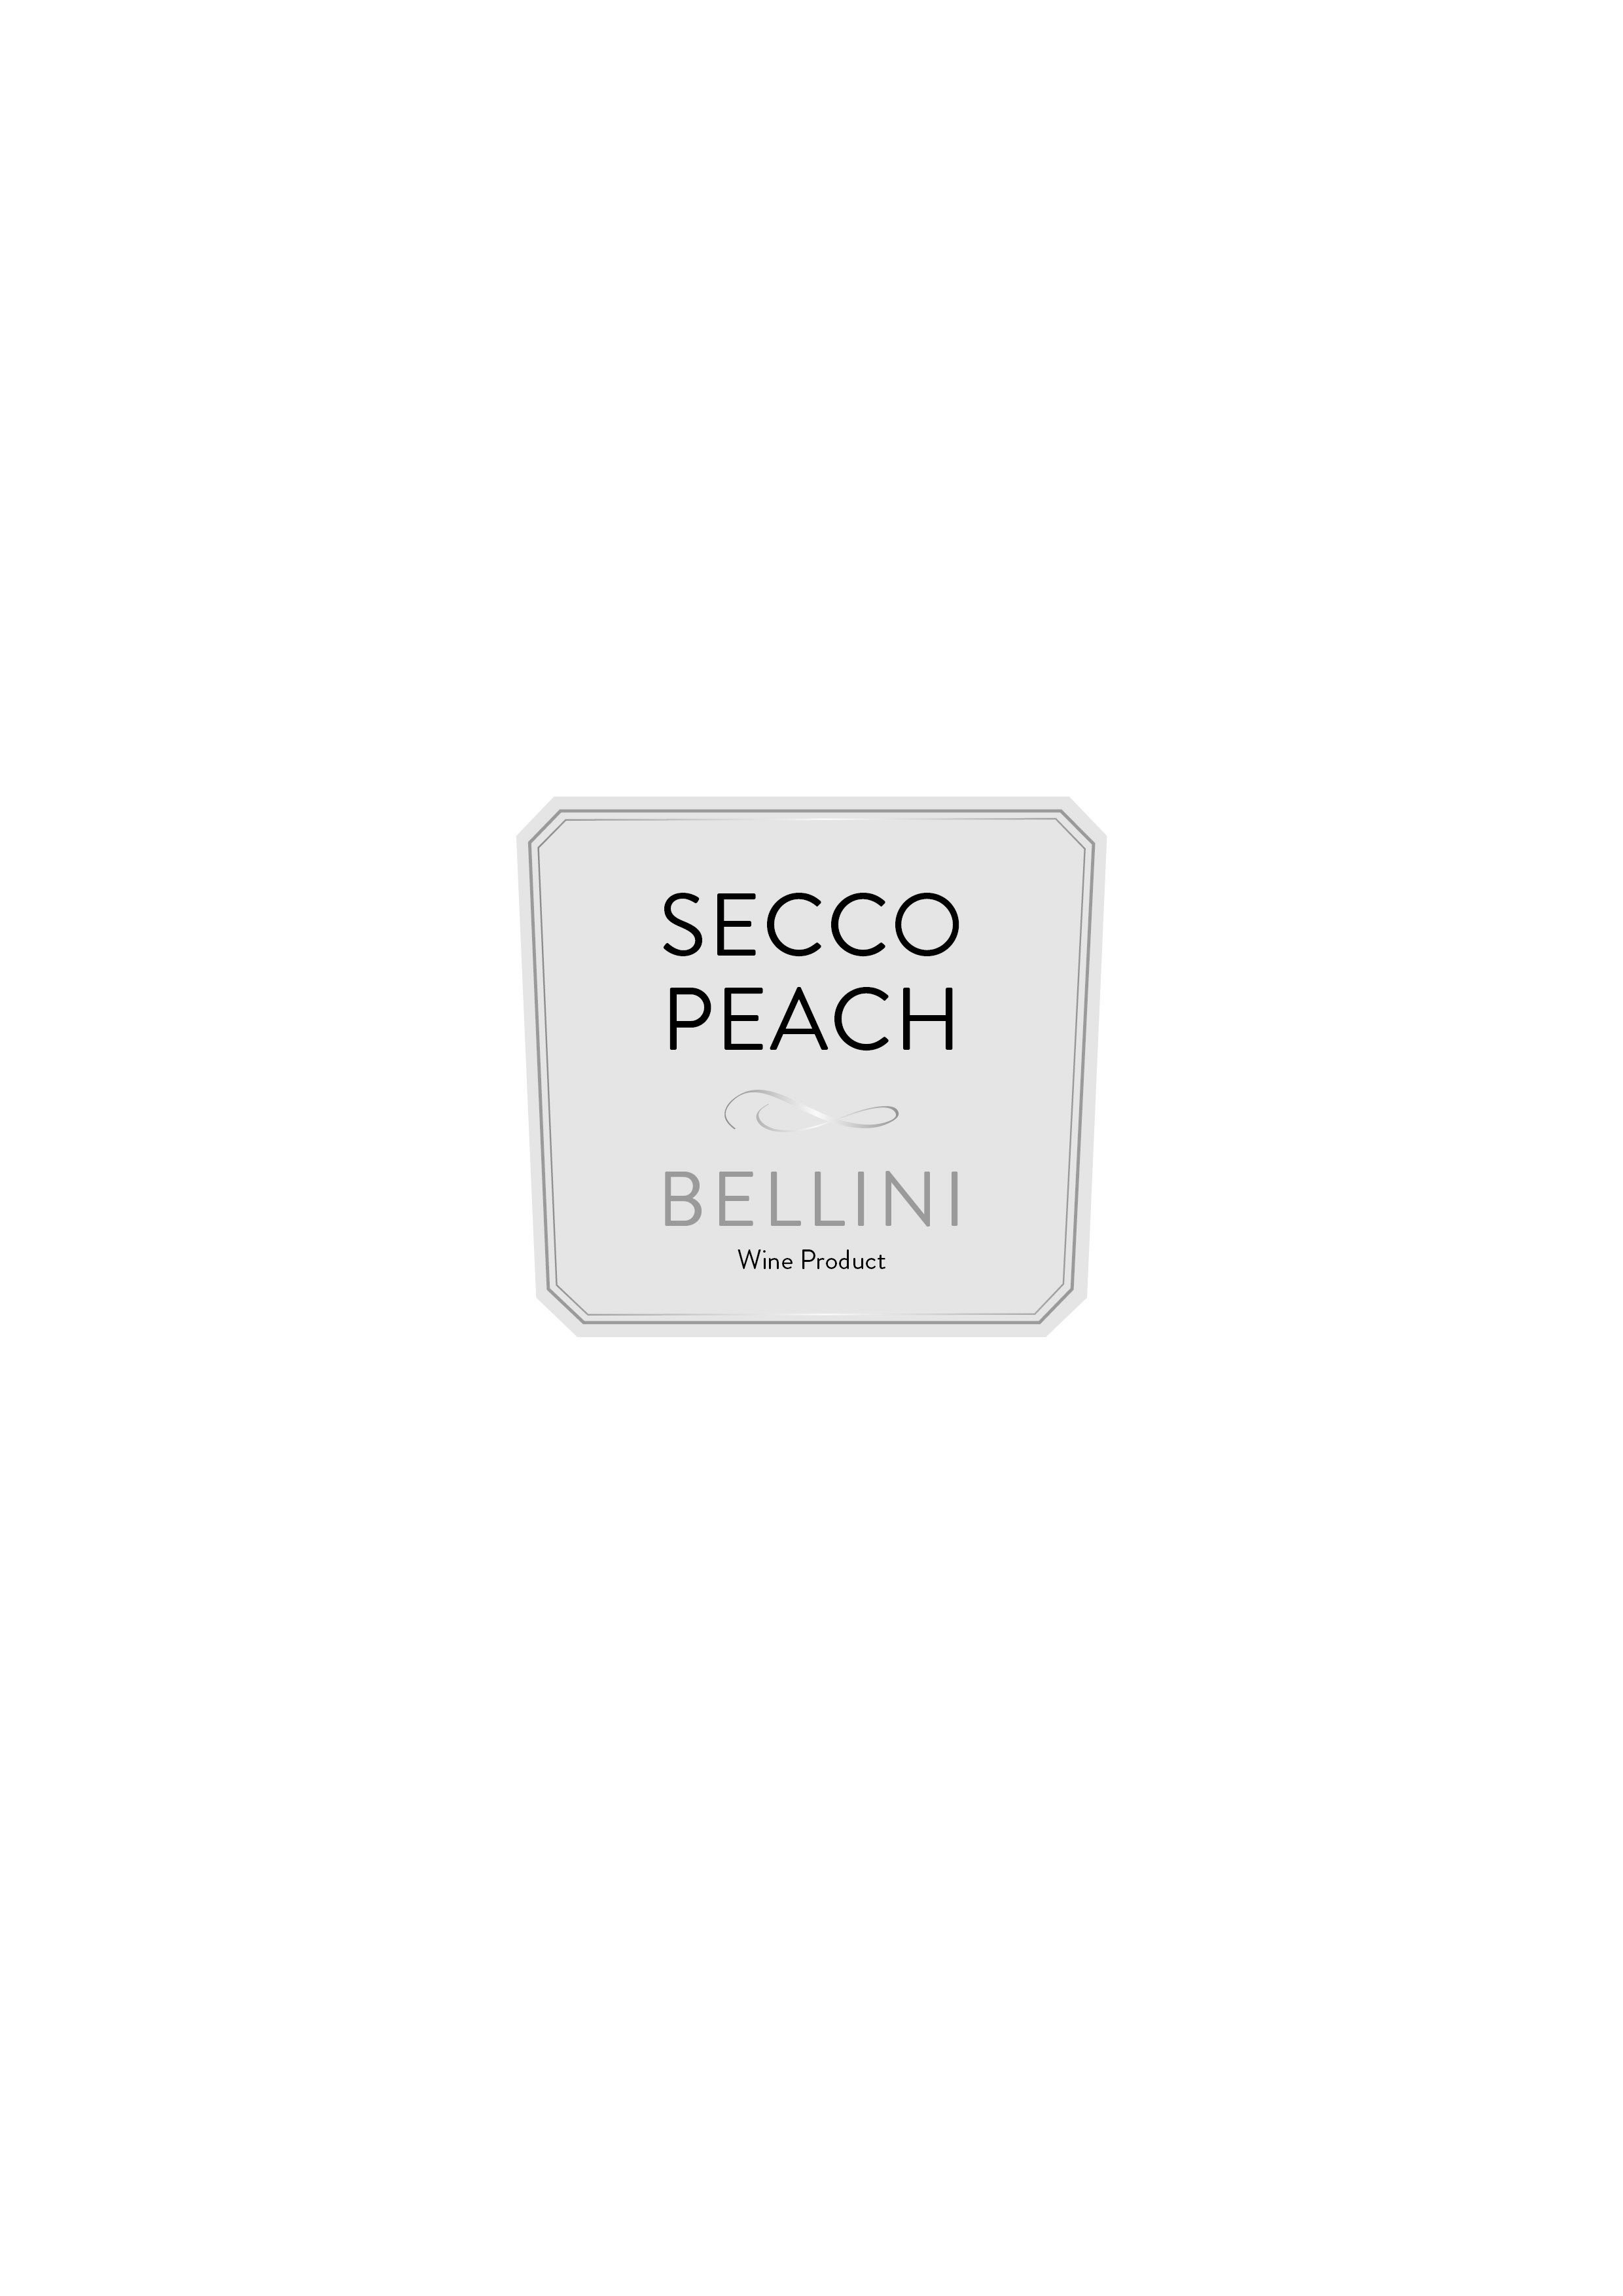  SECCO PEACH BELLINI WINE PRODUCT